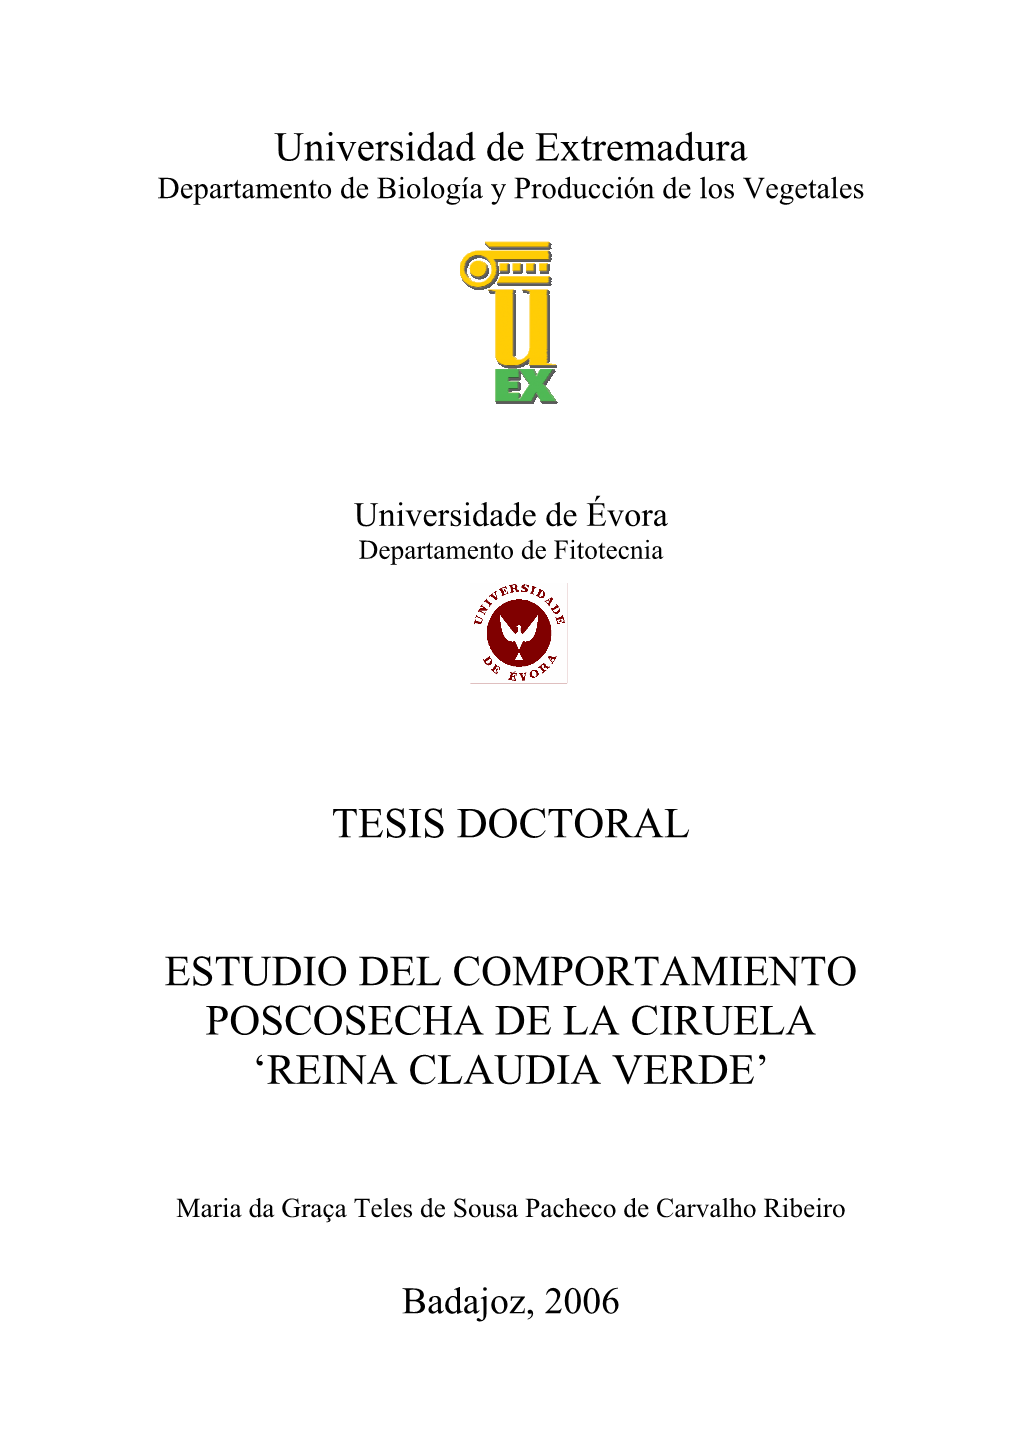 Tesis Doctoral Estudio Del Comportamiento Poscosecha De La Ciruela 'Reina Claudia Verde'